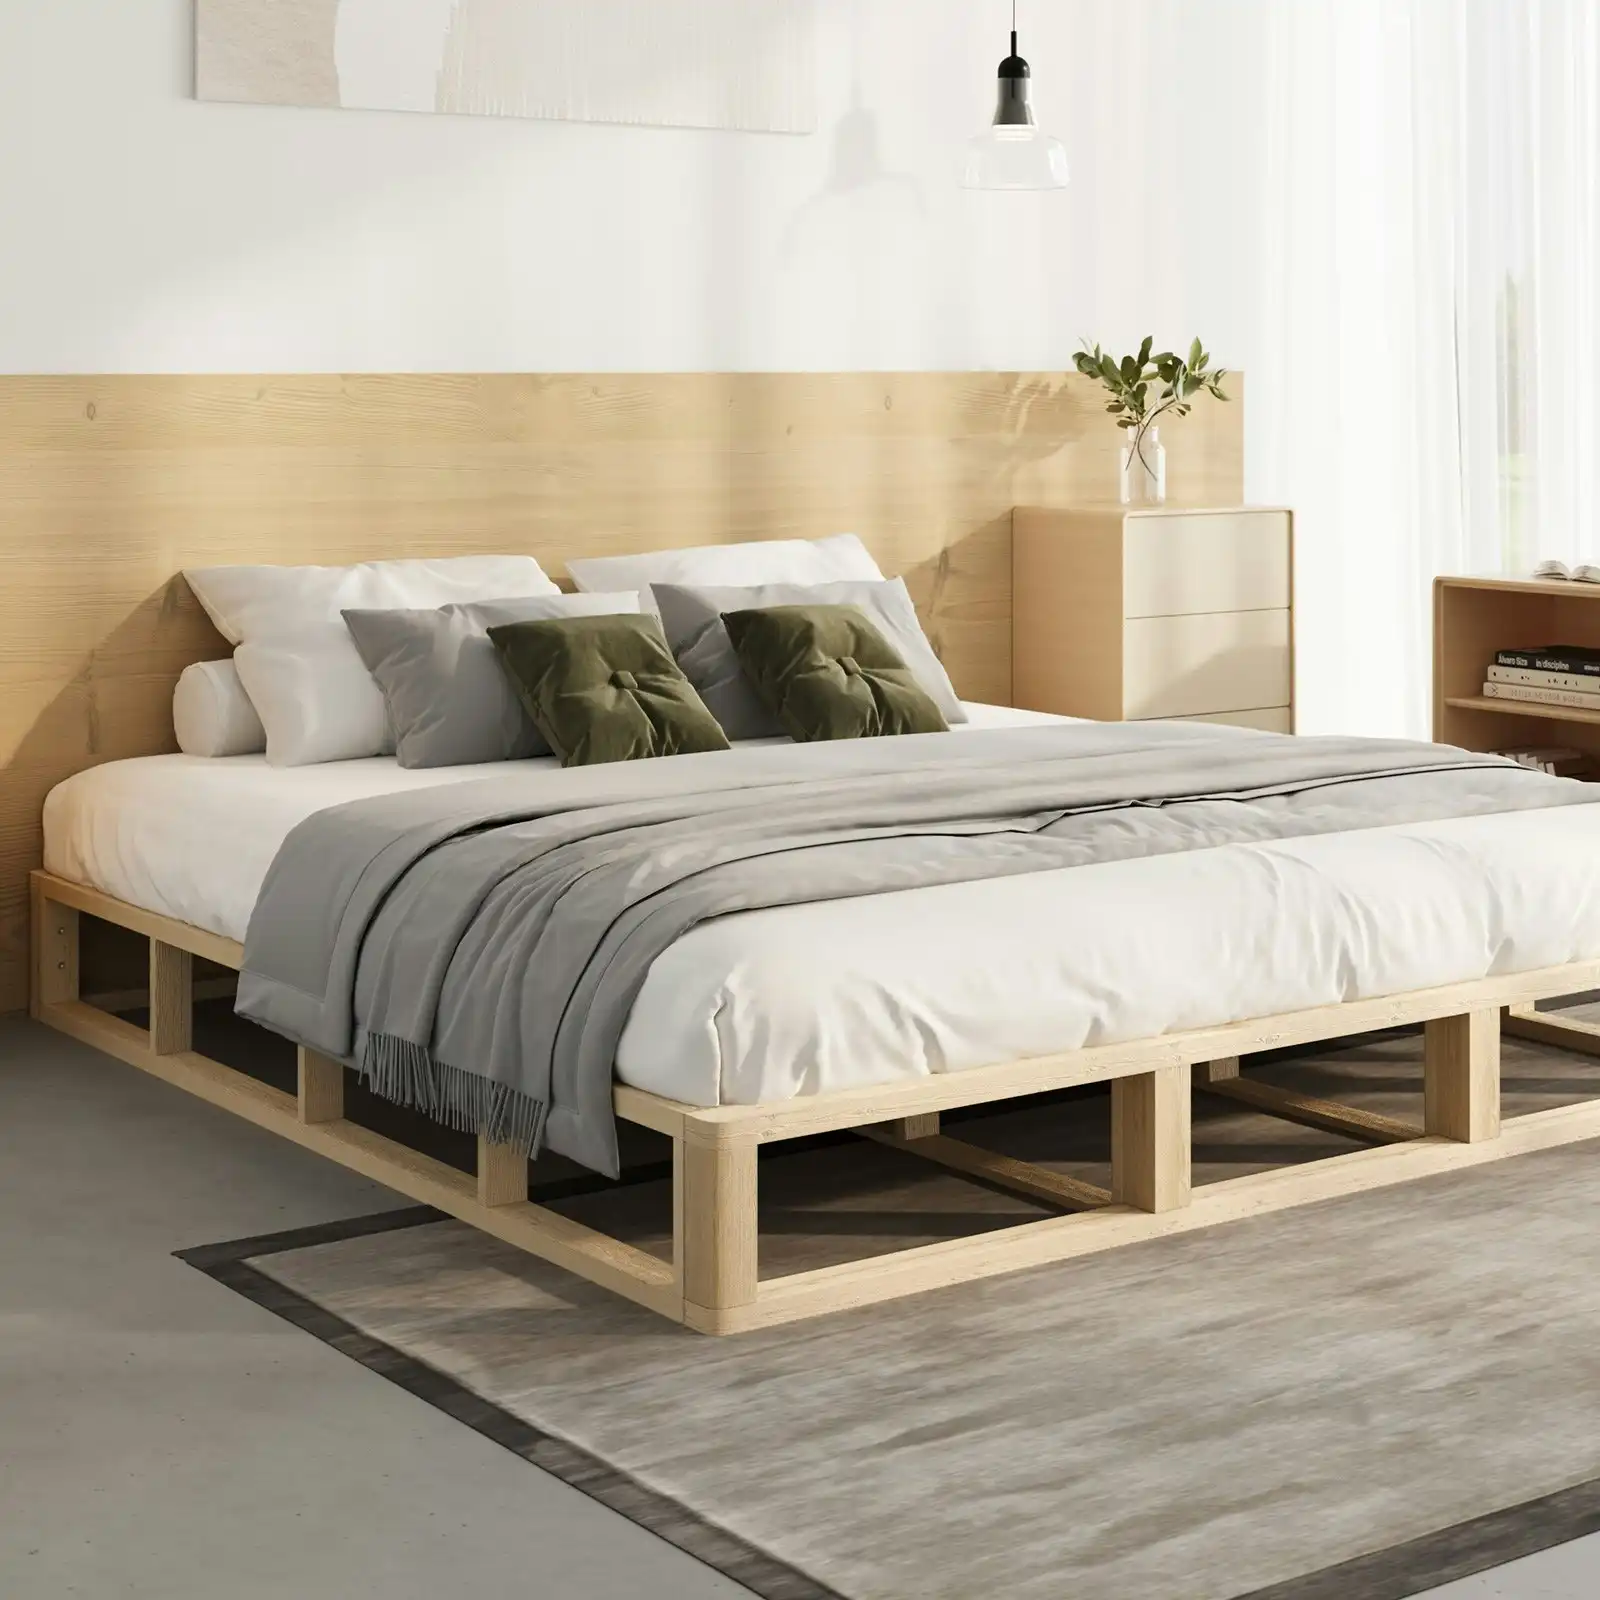 Oikiture Bed Frame King Size Bed Base Wooden Platform Cage-like Base